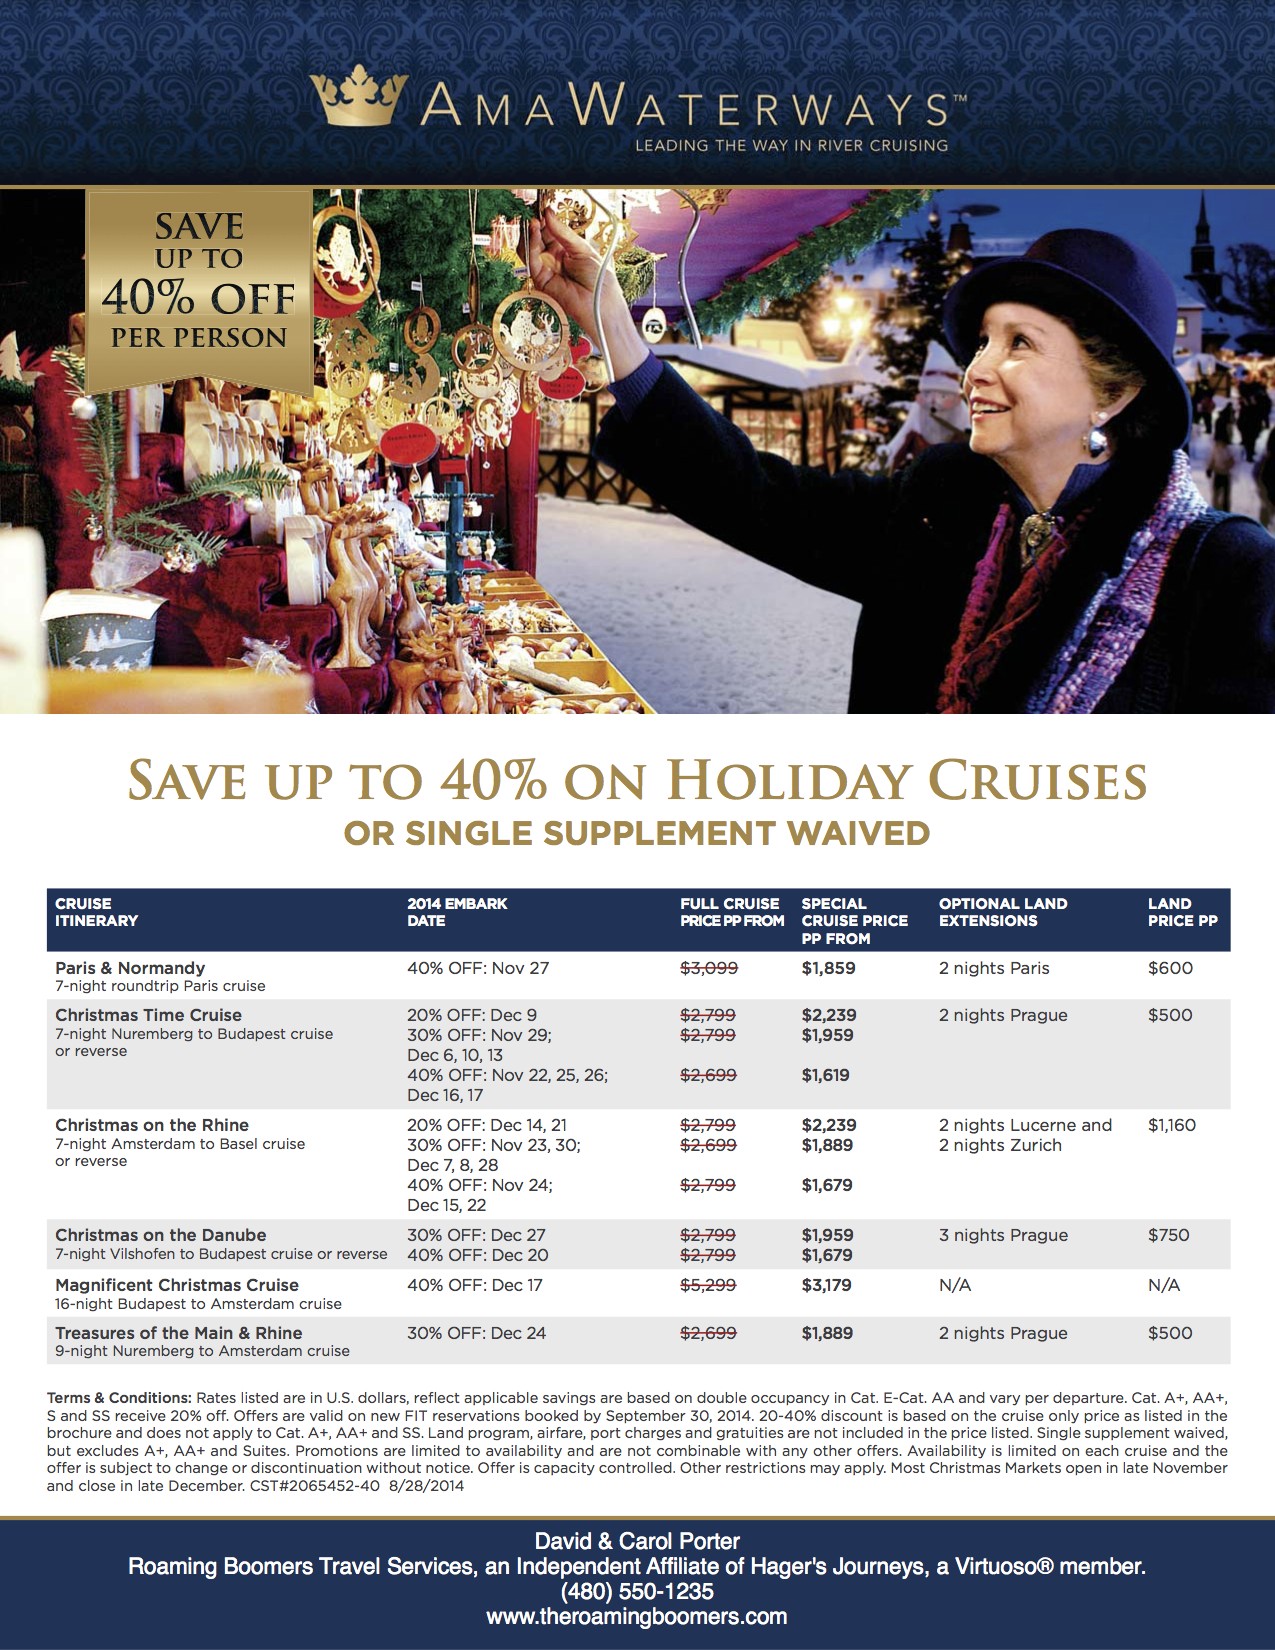 AmaWaterways Holiday Cruises 2014